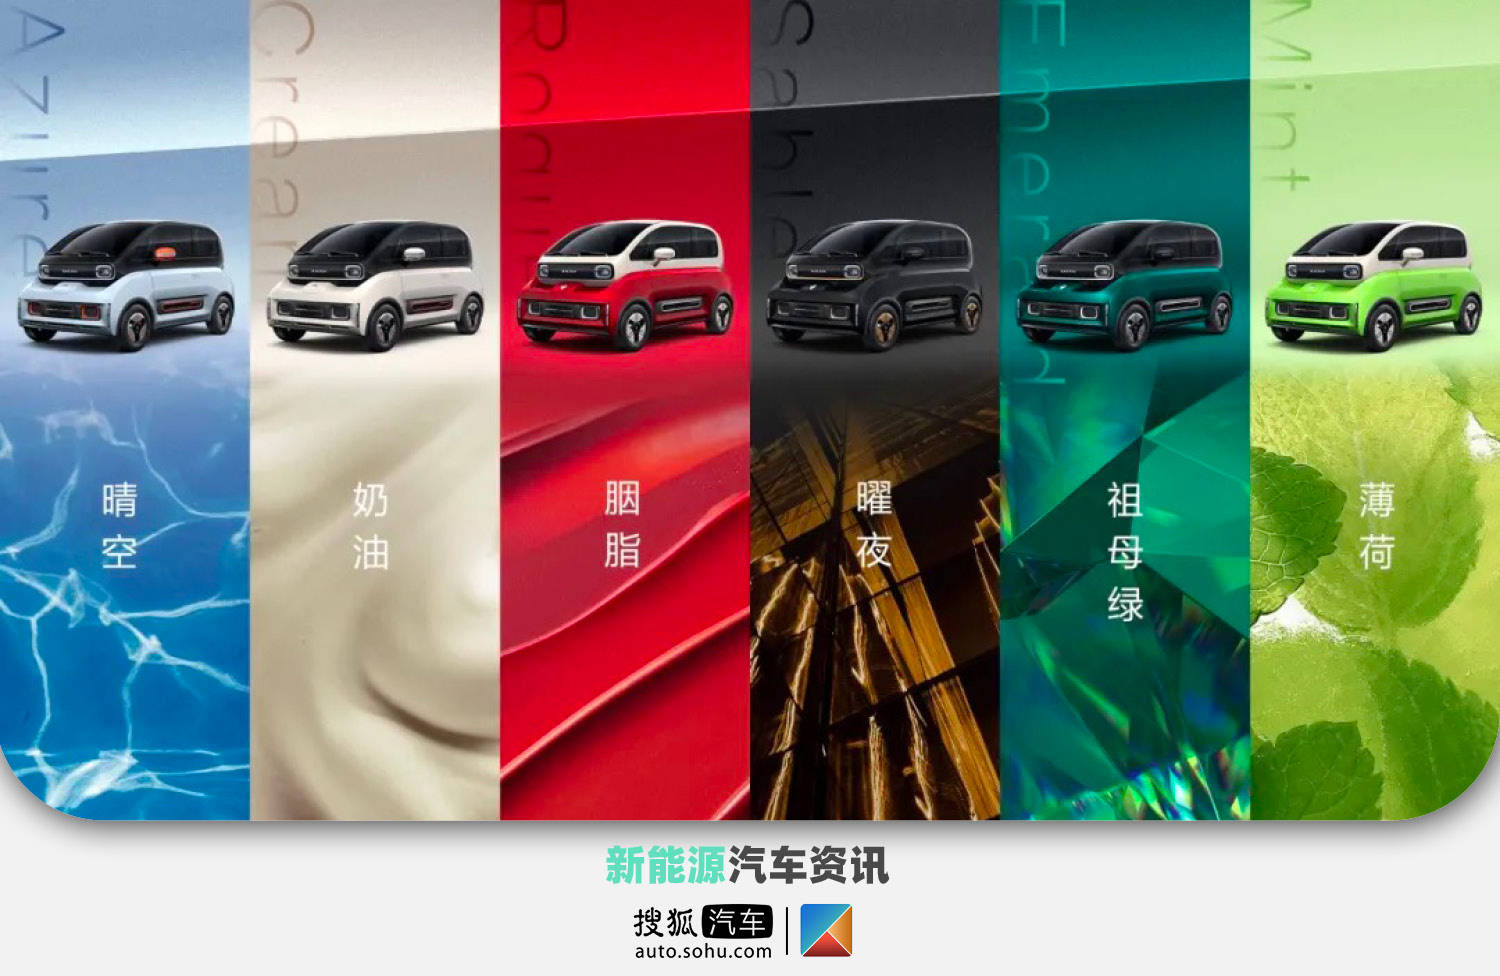 将于三季度上市 宝骏kiwi ev发布六款车身颜色